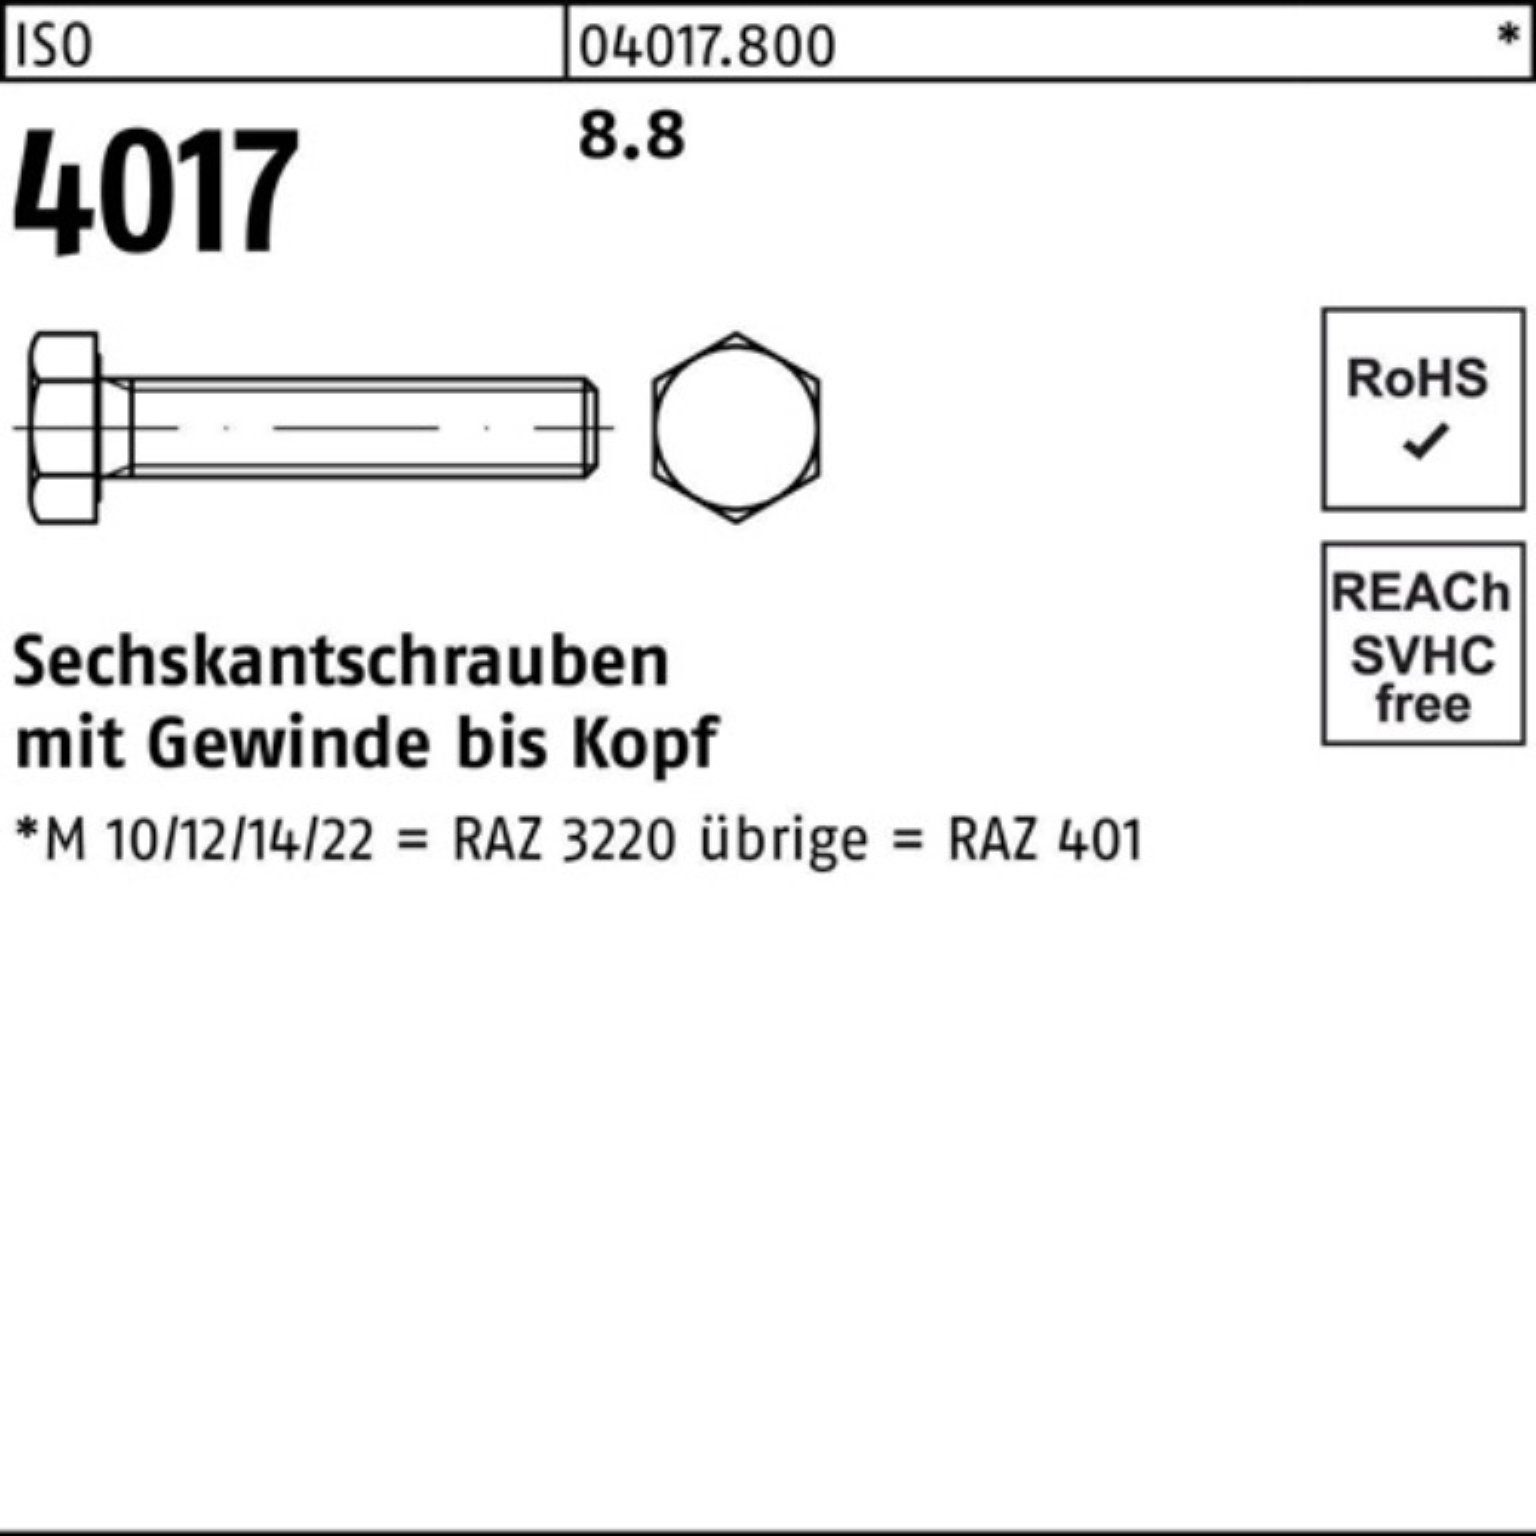 Stück 8.8 Pack Sechskantschraube 100er 1 Bufab 4017 ISO 90 Sechskantschraube 4017 ISO VG M33x